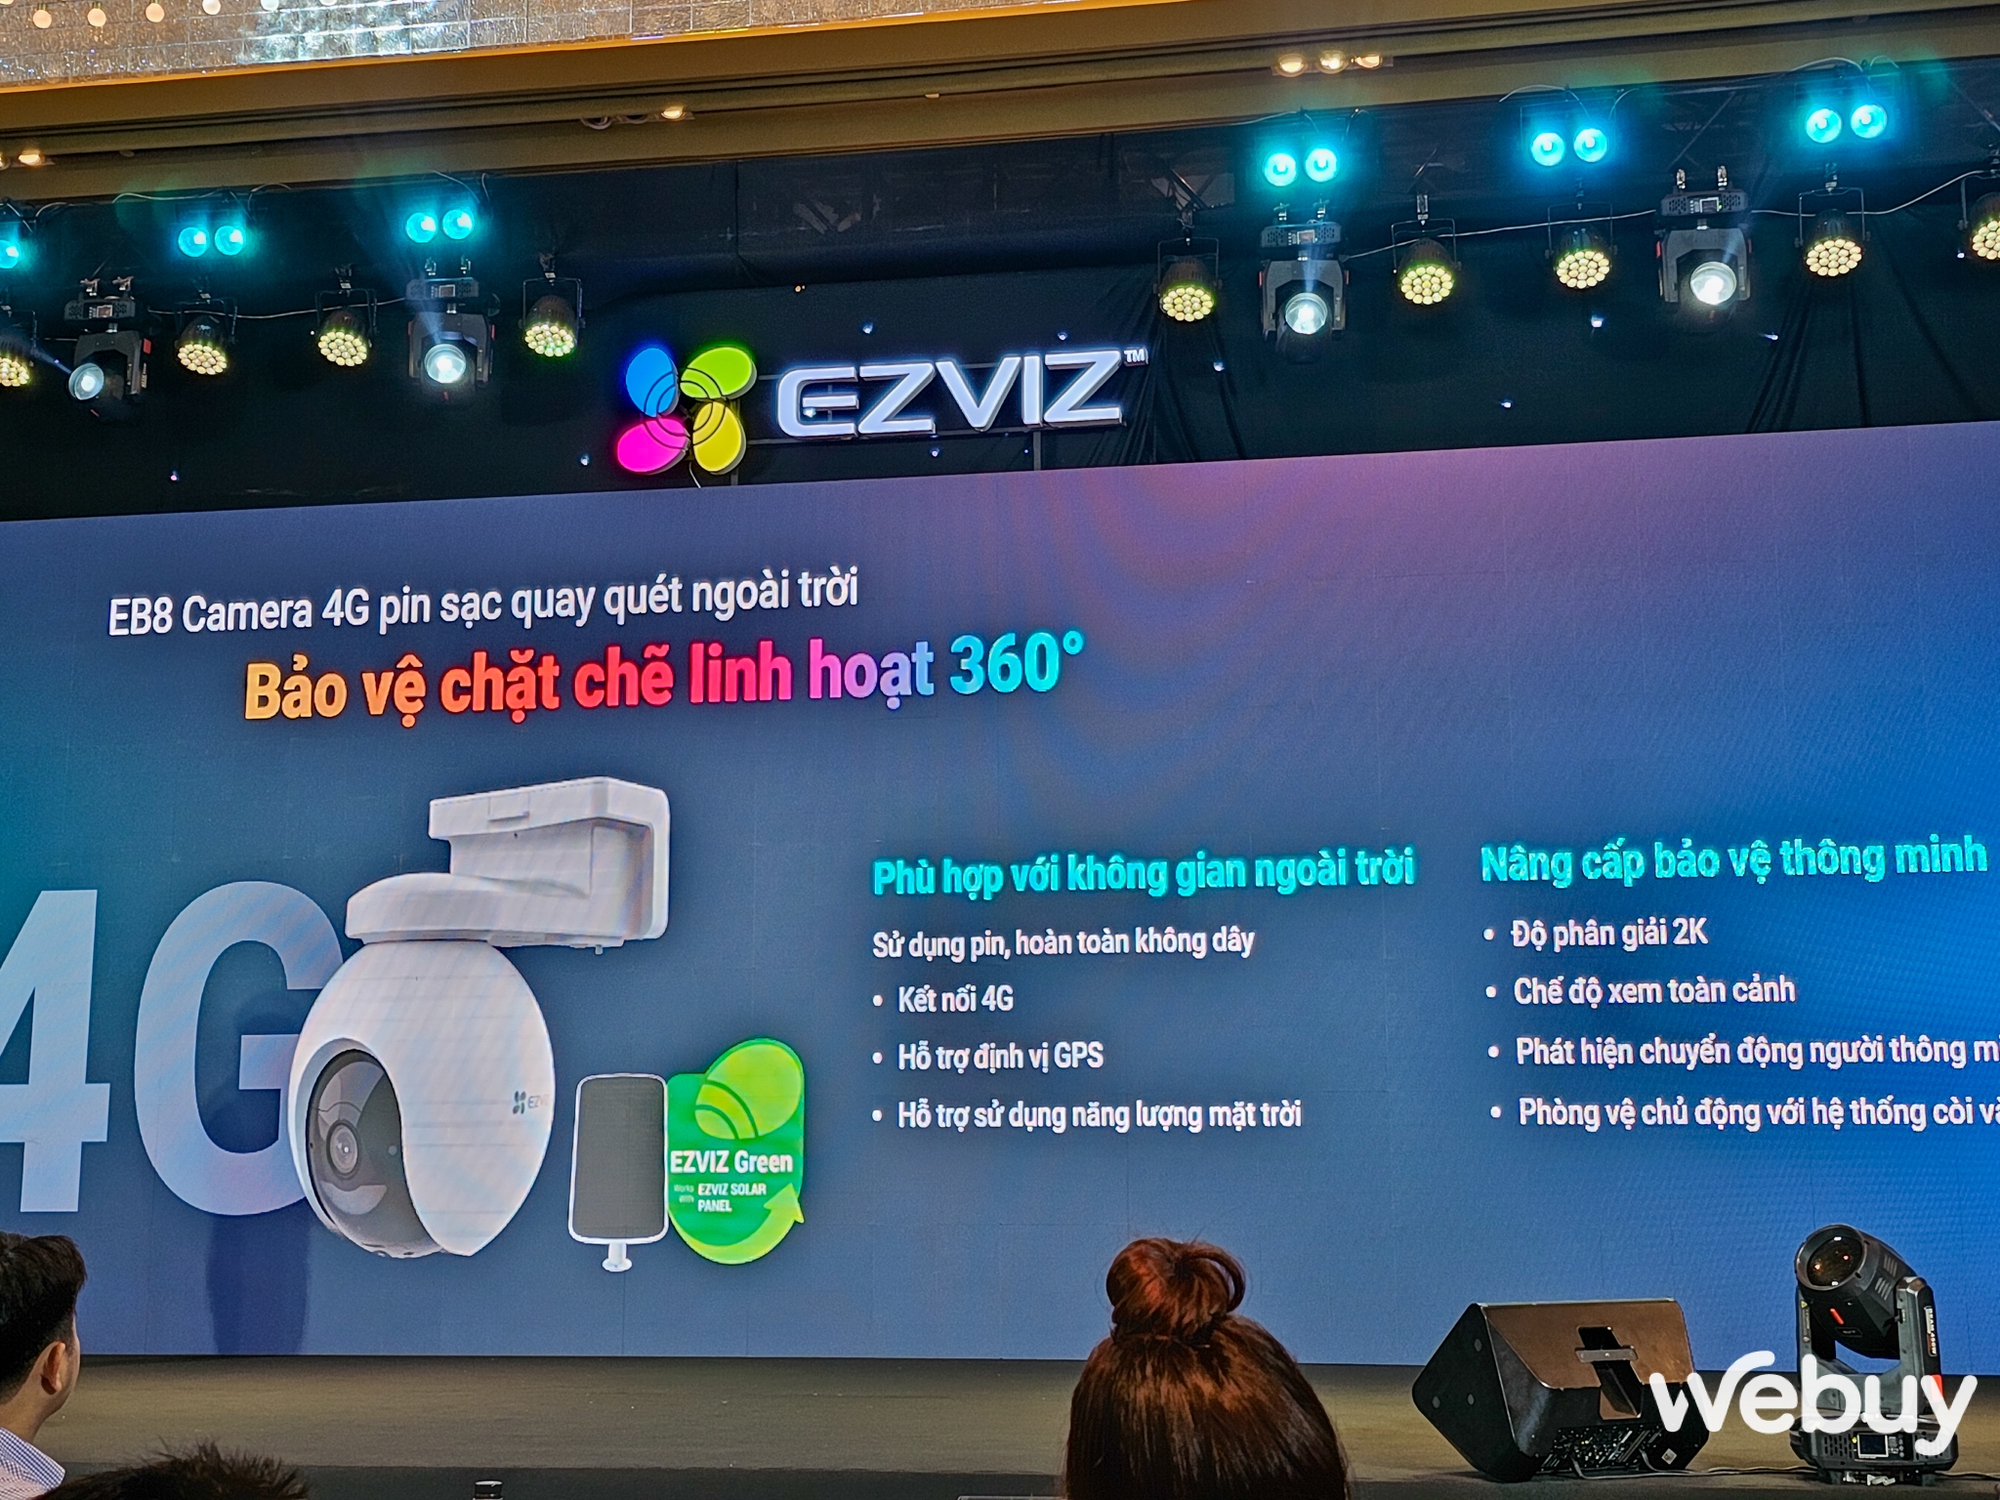 EZVIZ ra mắt loạt sản phẩm mới: Camera giám sát tích hợp 4G, Robot hút bụi tự động, cây lau nhà thông minh cùng nhiều thiết bị quản lý Smarthome khác - Ảnh 4.